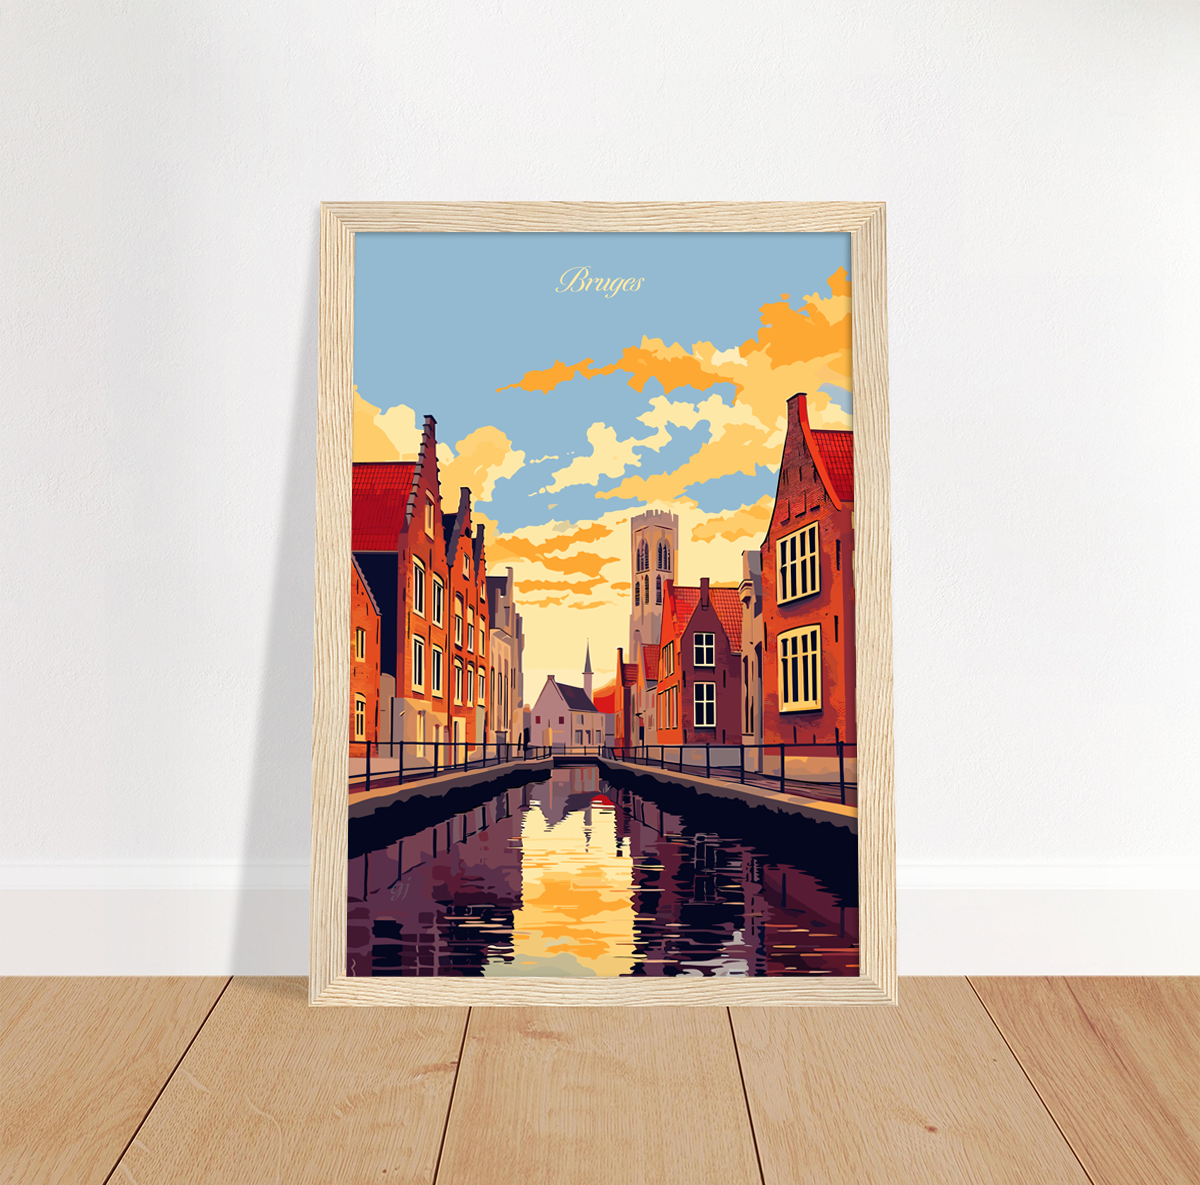 Bruges poster by bon voyage design